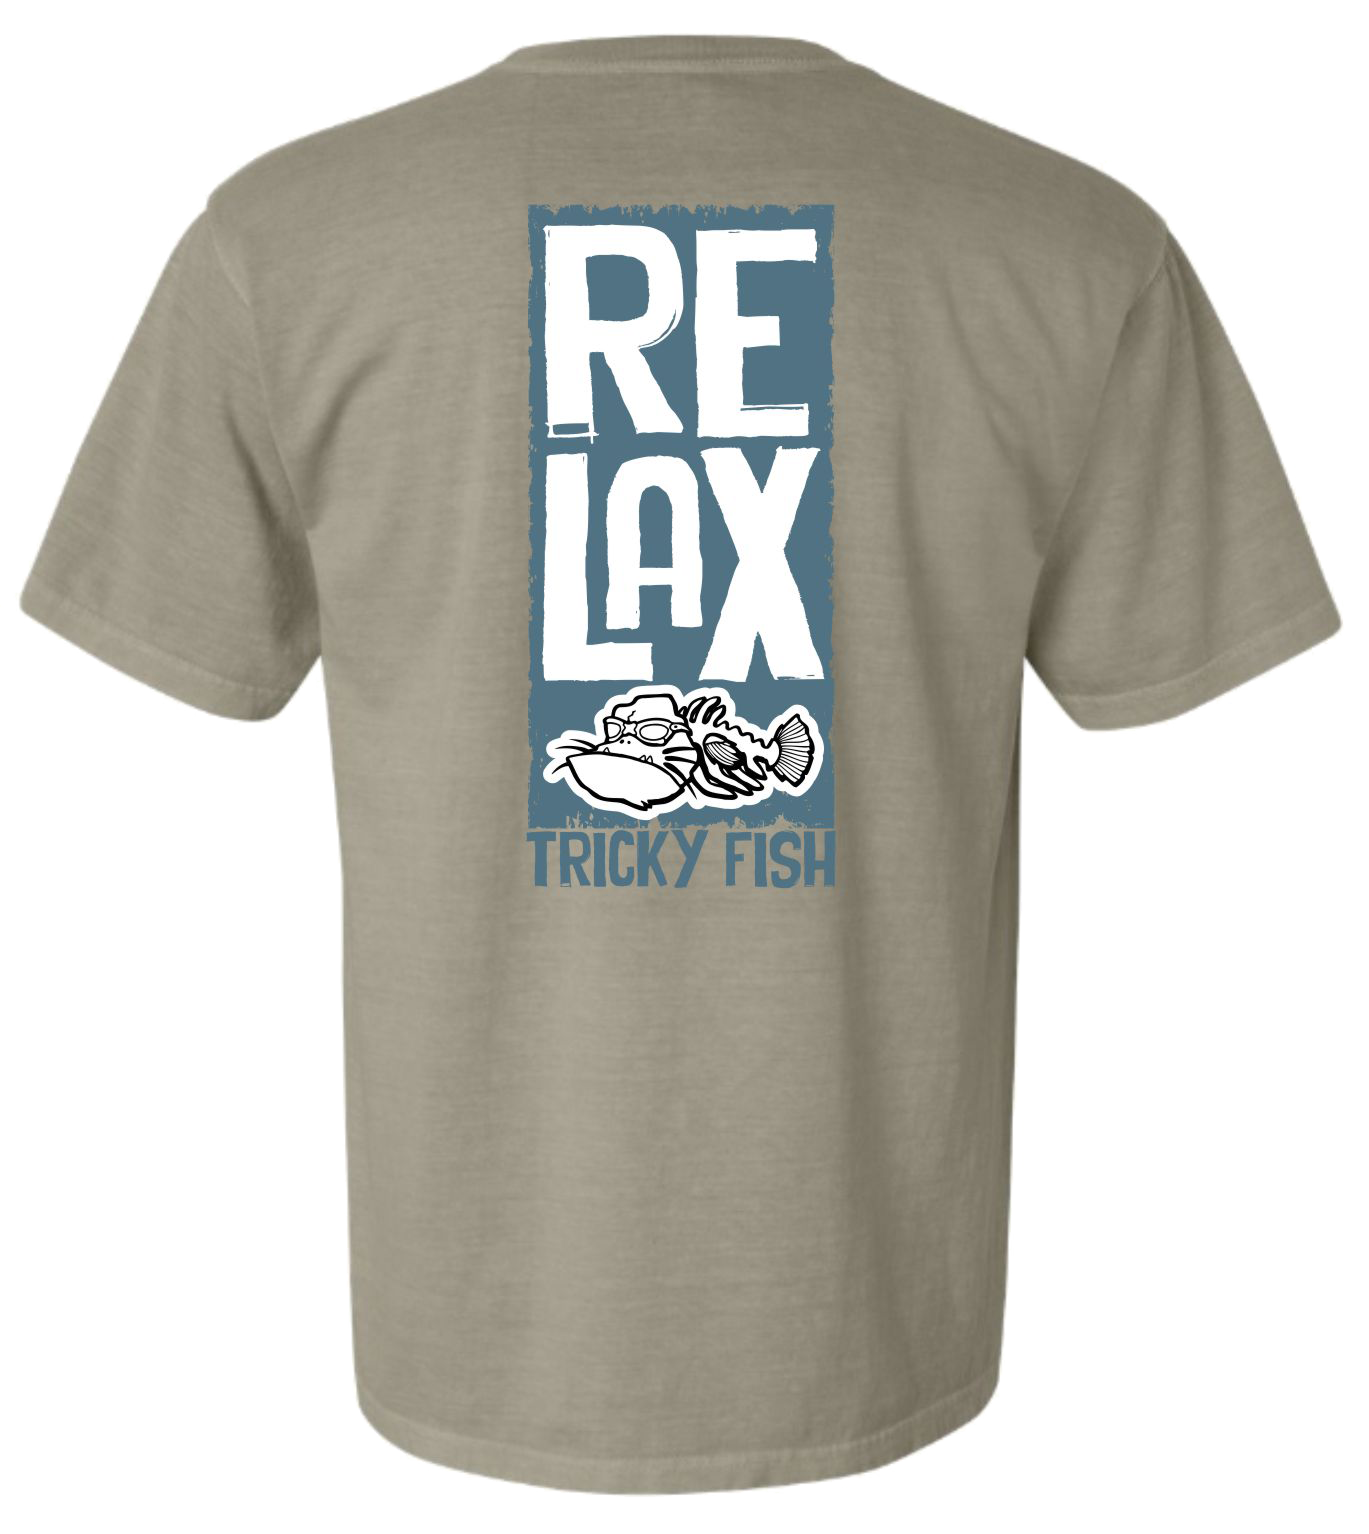 relax t shirt